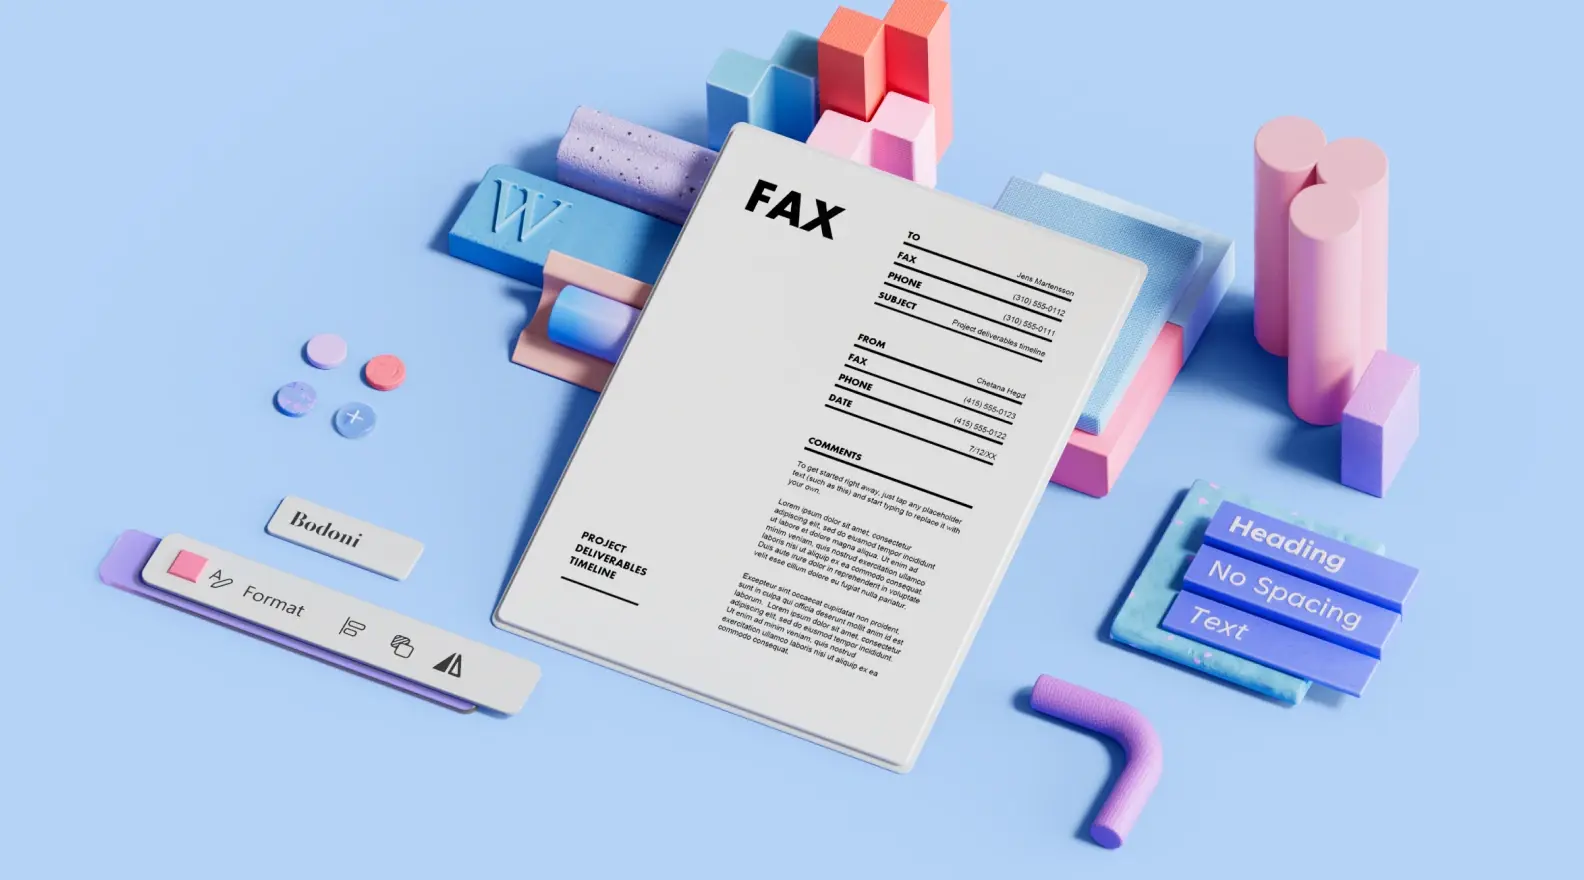 Шаблон за титулна страница за факс, заобиколен от 3D елементи на дизайна